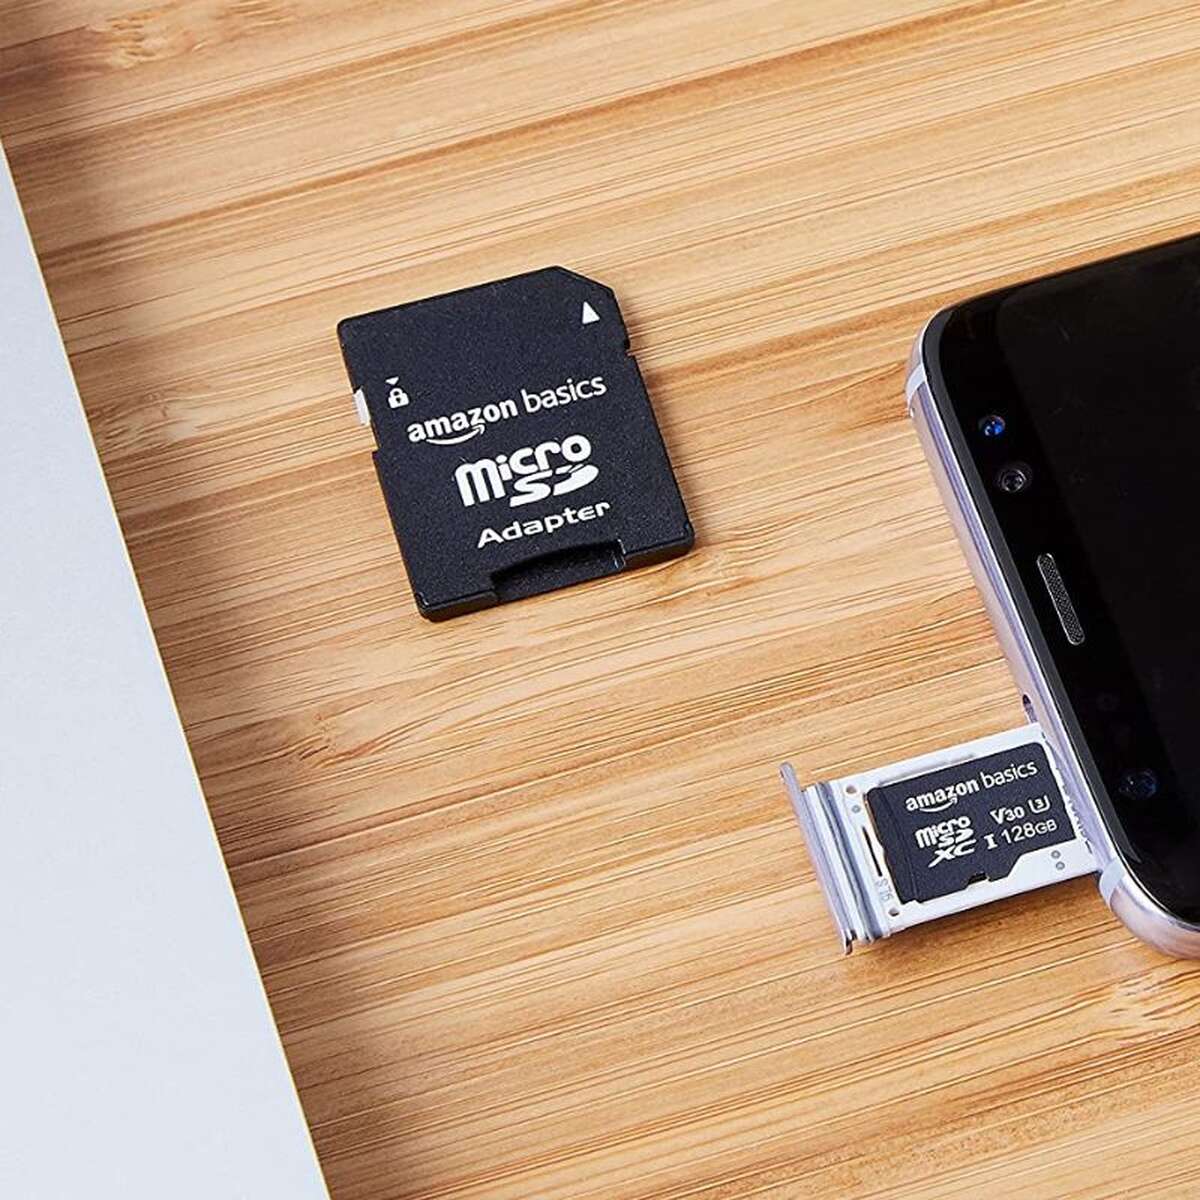 Carte microSD HC 16 Go pour caméra GoPro